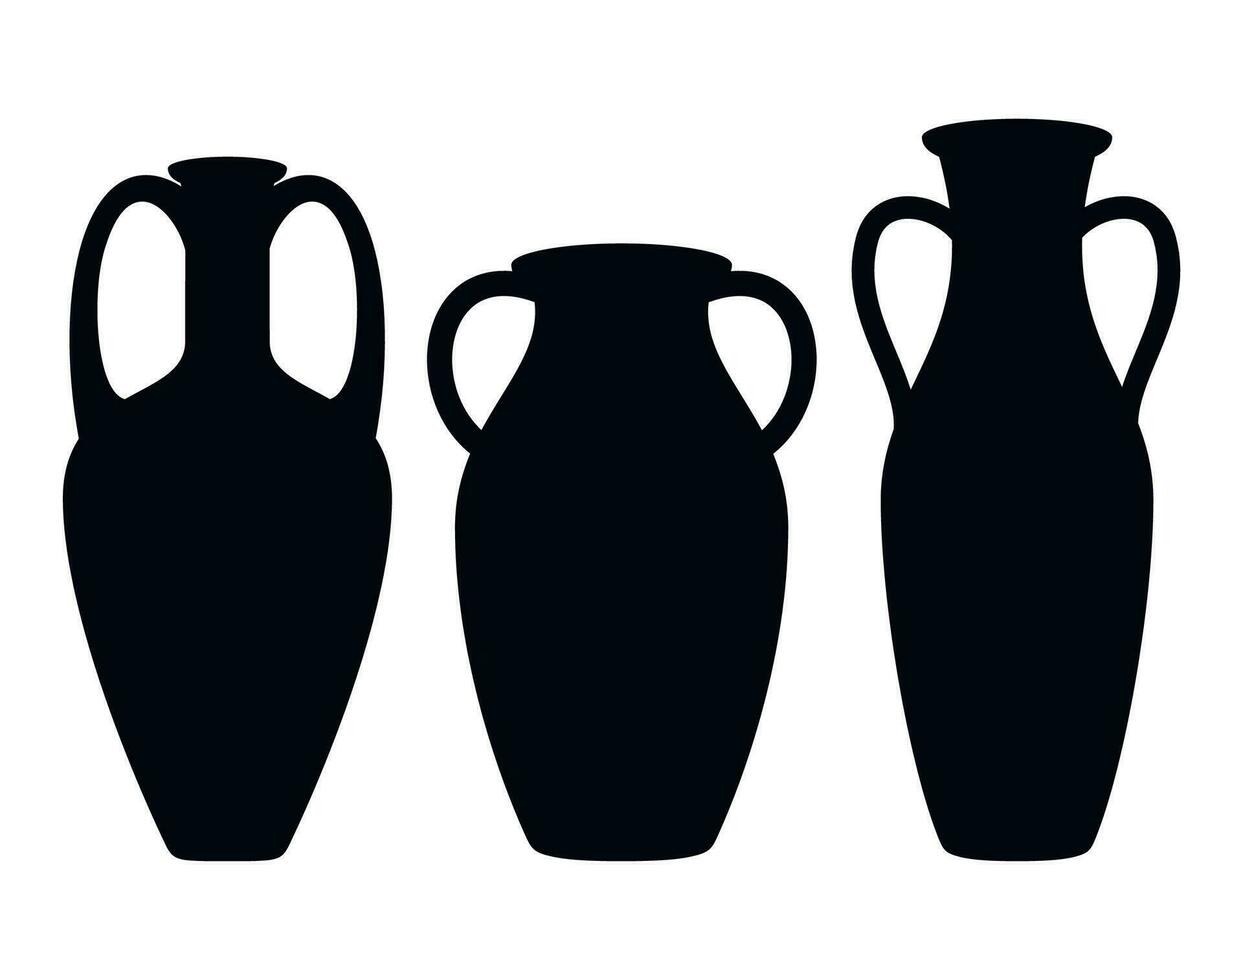 Antiquität Amphora Symbole mit zwei Griffe. uralt Lehm Vasen Gläser, alt traditionell Jahrgang Topf. Keramik Krug archäologisch Artefakte. griechisch oder römisch Schiff Keramik zum Wein oder Öl. Vektor